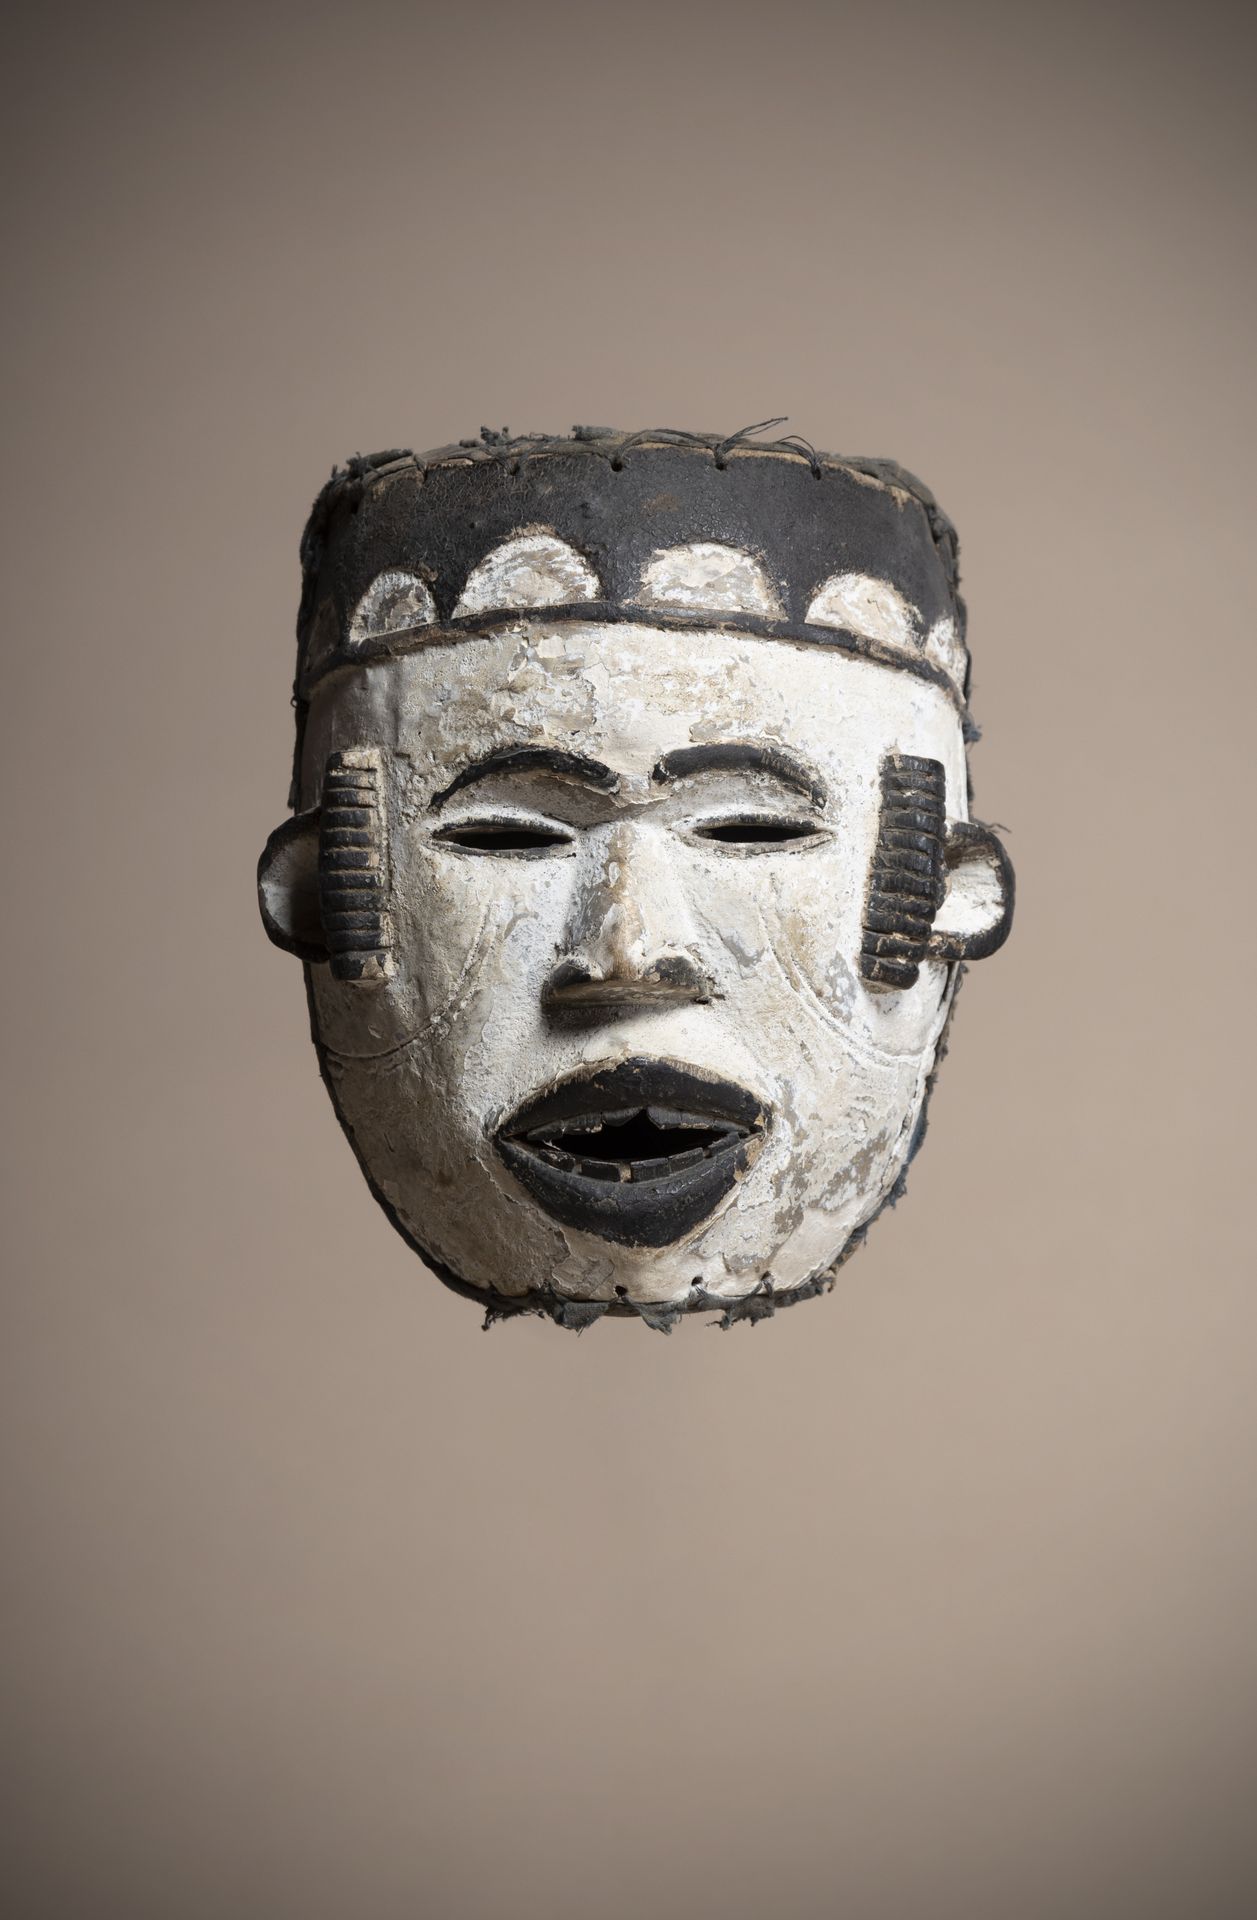 Null IDOMA (Nigeria)

Weiße Gesichtsmaske mit erhabenen Schläfenskarifikationen &hellip;